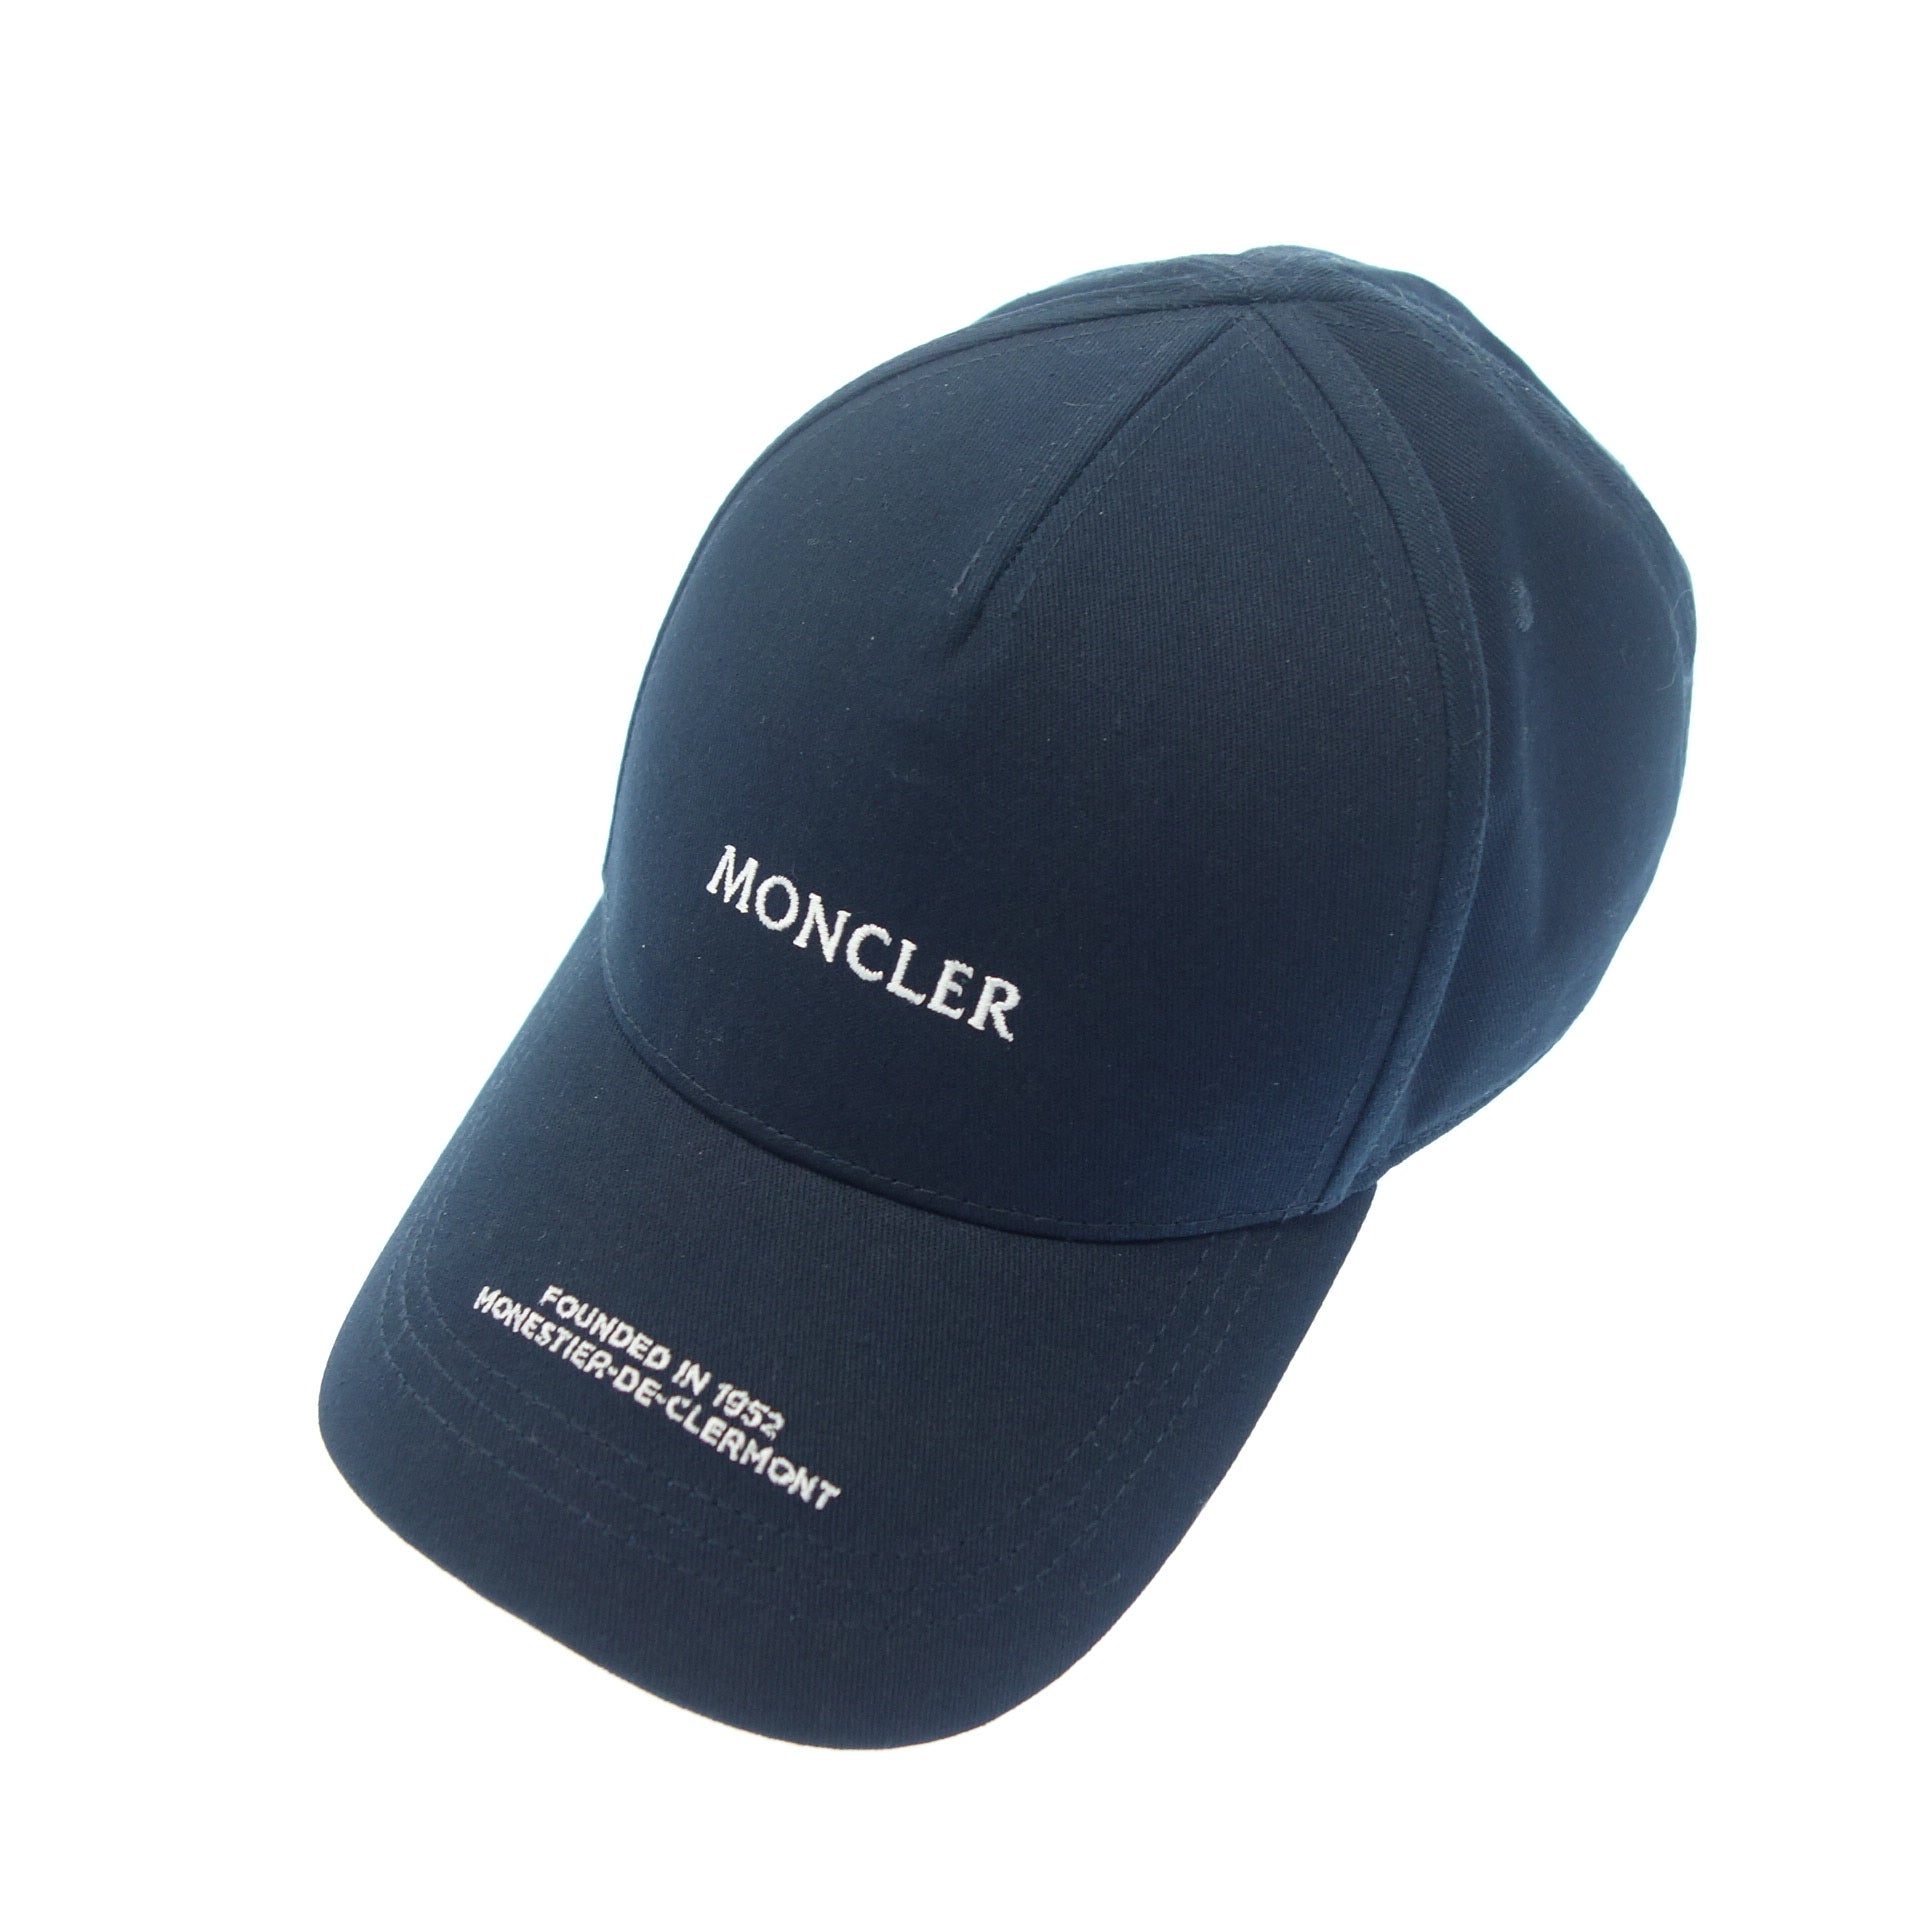 MONCLER 帽子 キャップ ベースボールキャップ ユニセックス 黒